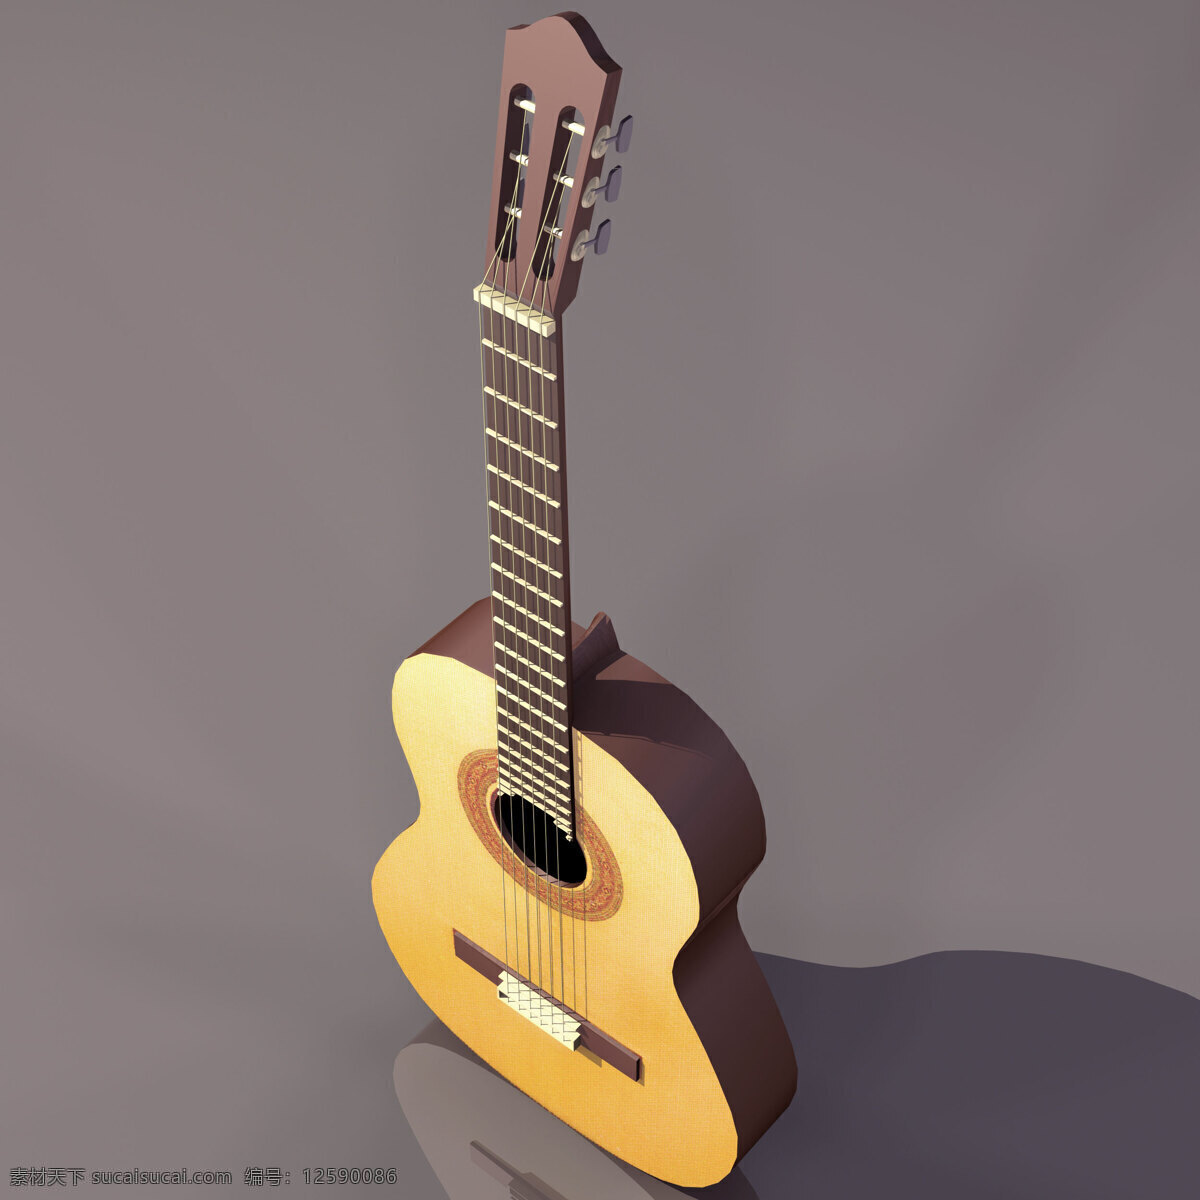 吉他 乐器 模型 guitar 文化用品 吉他乐器模型 乐器模型 3d模型素材 电器模型